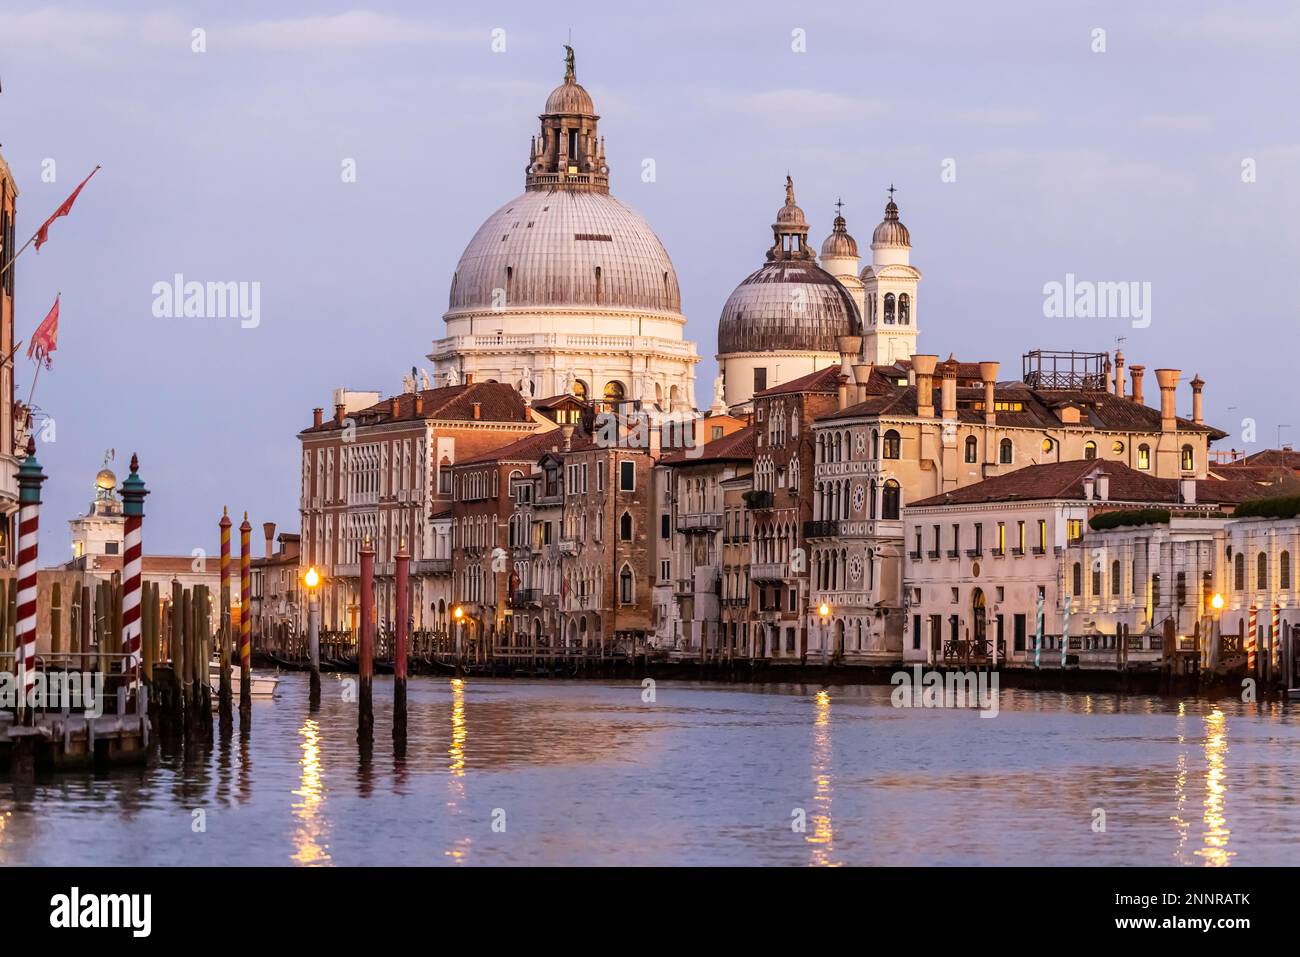 Evening atmosphere on the Grand Canal, Basilica di Santa Maria della Salute, Venice, Italy Stock Photo